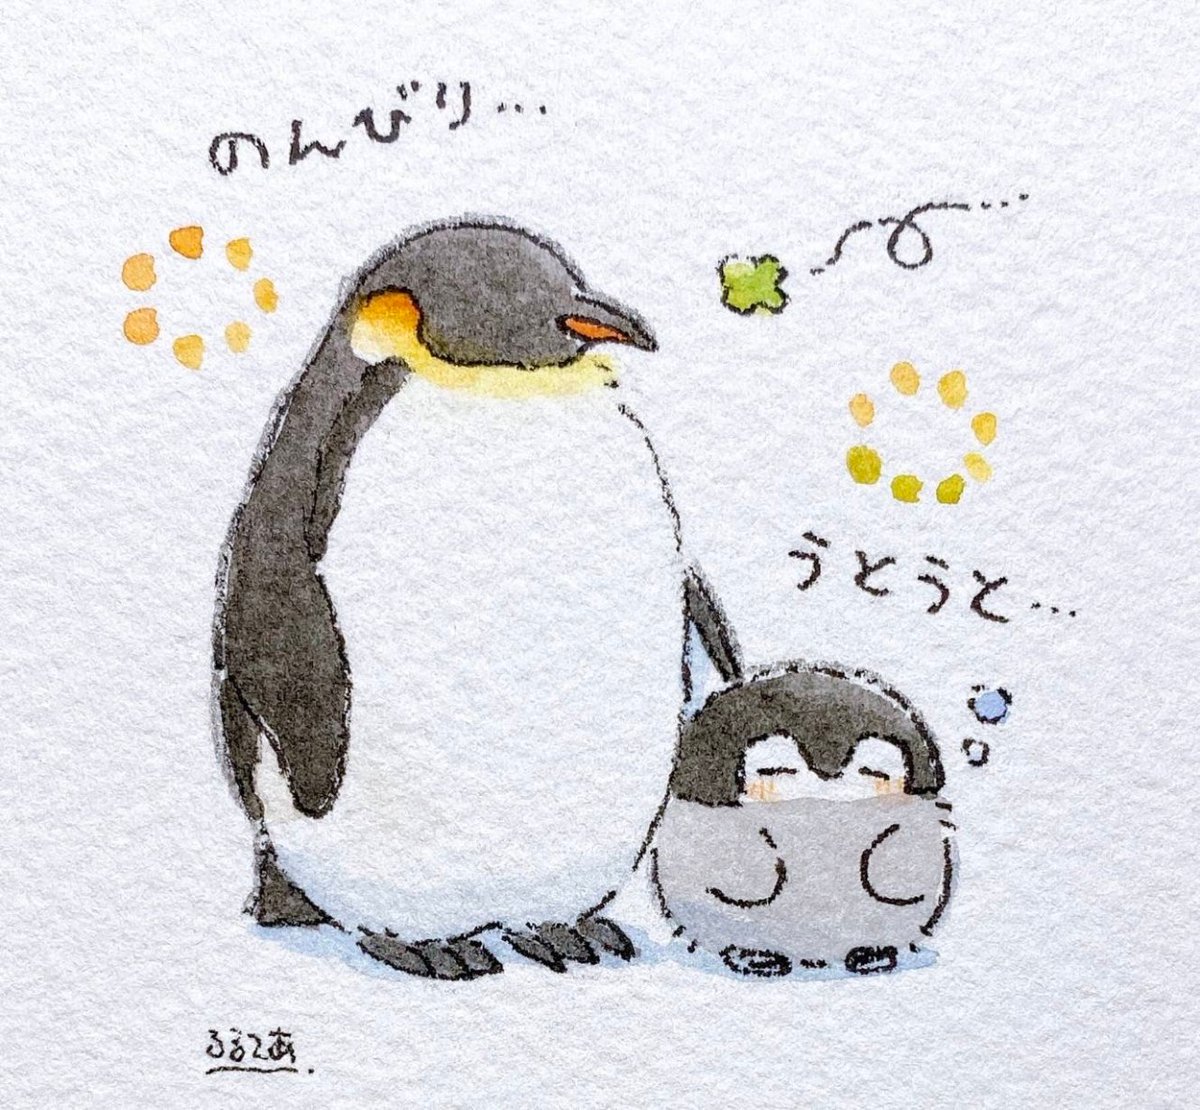 大人のペンギンさん、お誕生日おめでとう〜🎂🎉
いつもぼくたちをあたたかくやさしく見守ってくれてありがとうなんだよ〜🍀
だ〜いすき！🐧🧡